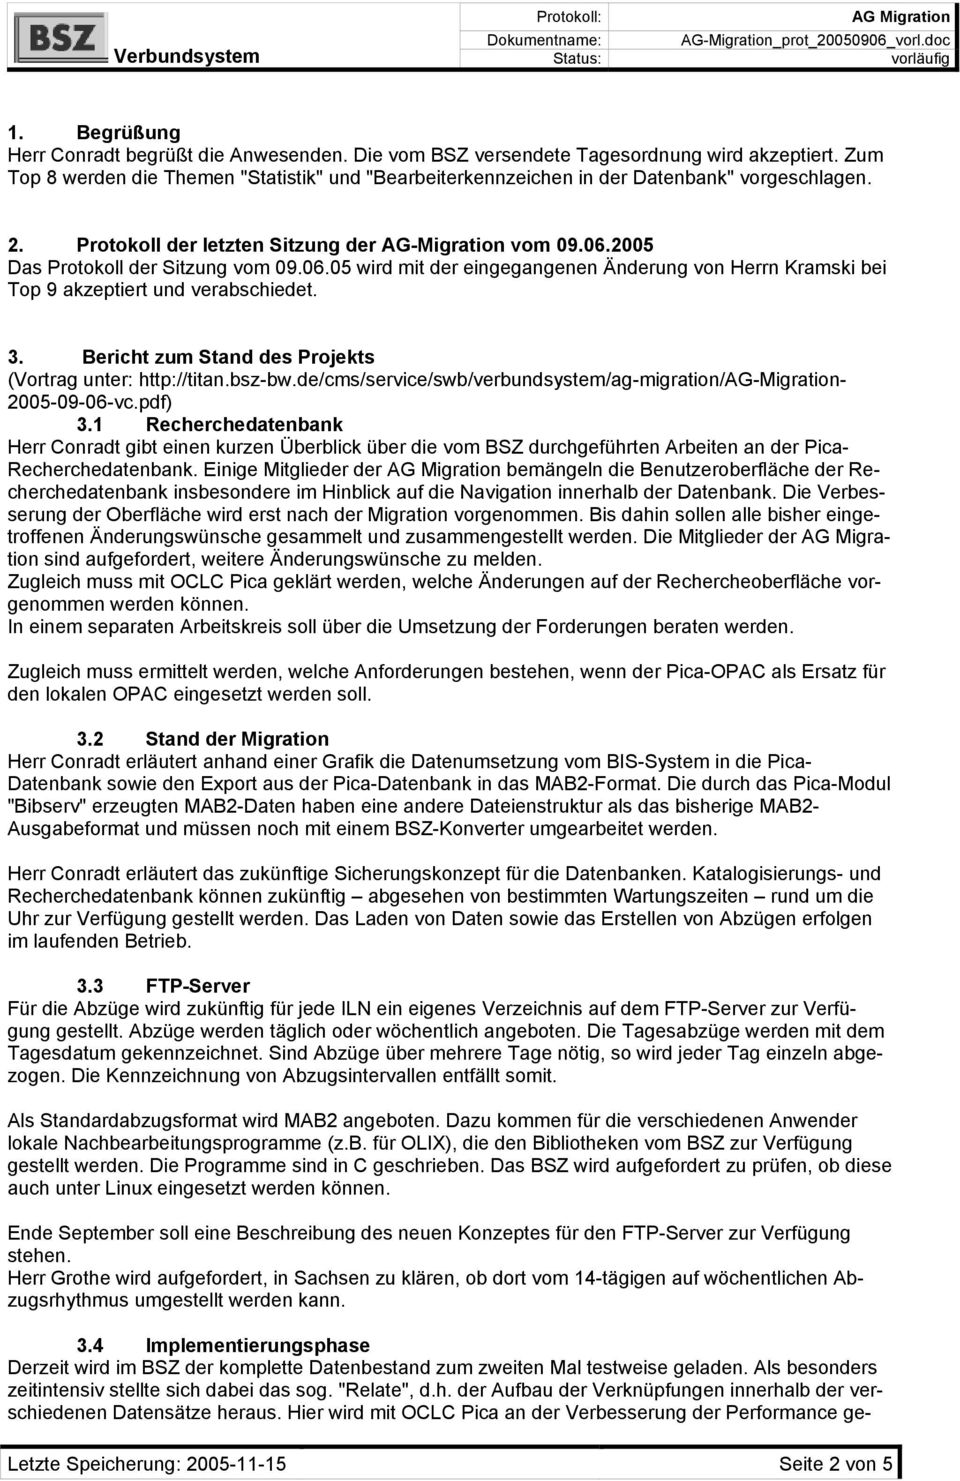 06.05 wird mit der eingegangenen Änderung von Herrn Kramski bei Top 9 akzeptiert und verabschiedet. 3. Bericht zum Stand des Projekts (Vortrag unter: http://titan.bsz-bw.